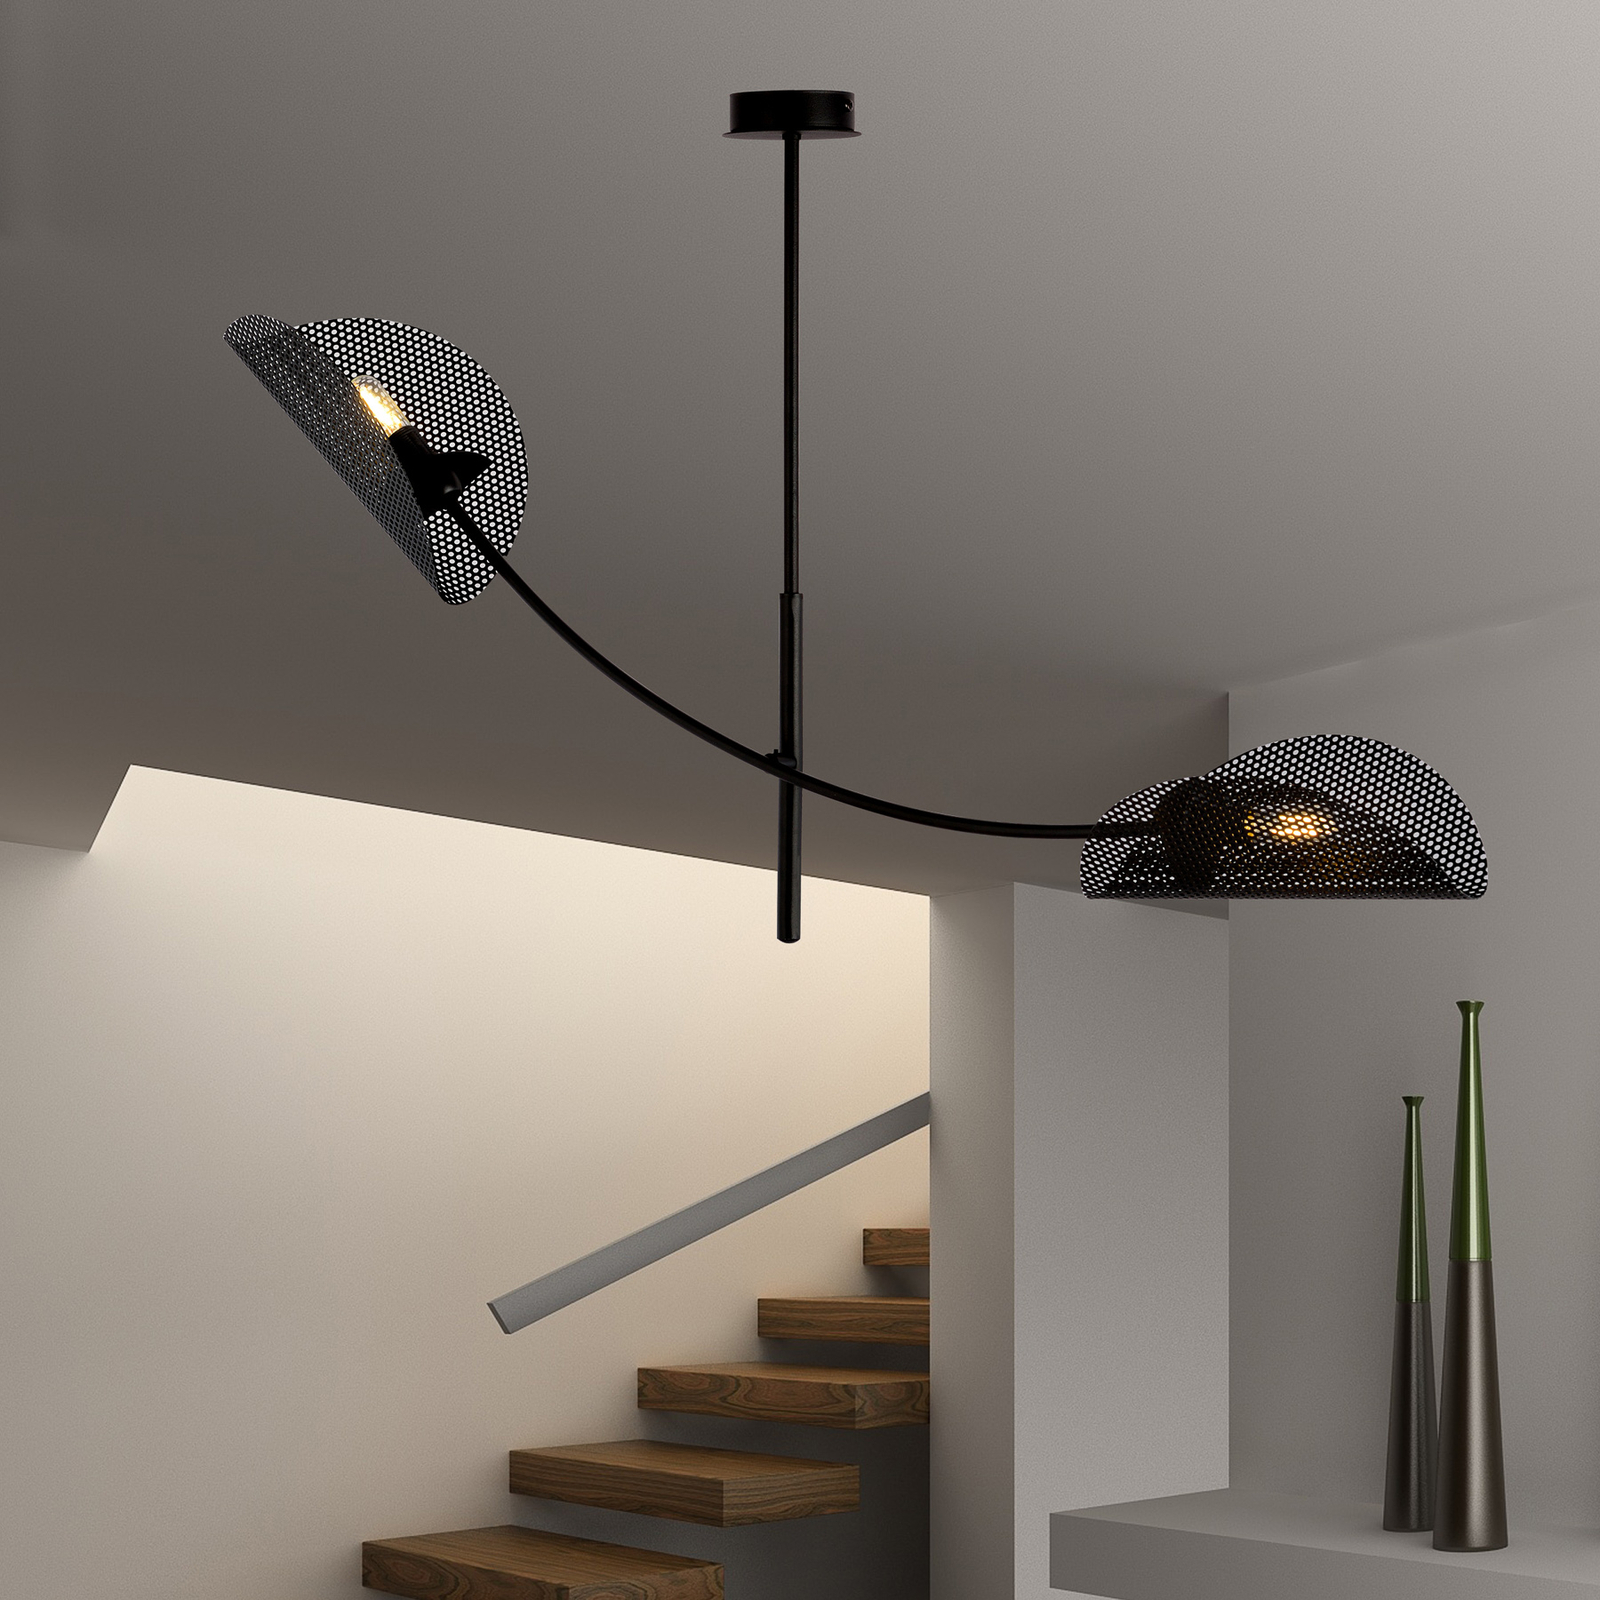 Gladio taklampa, svart, två lampor